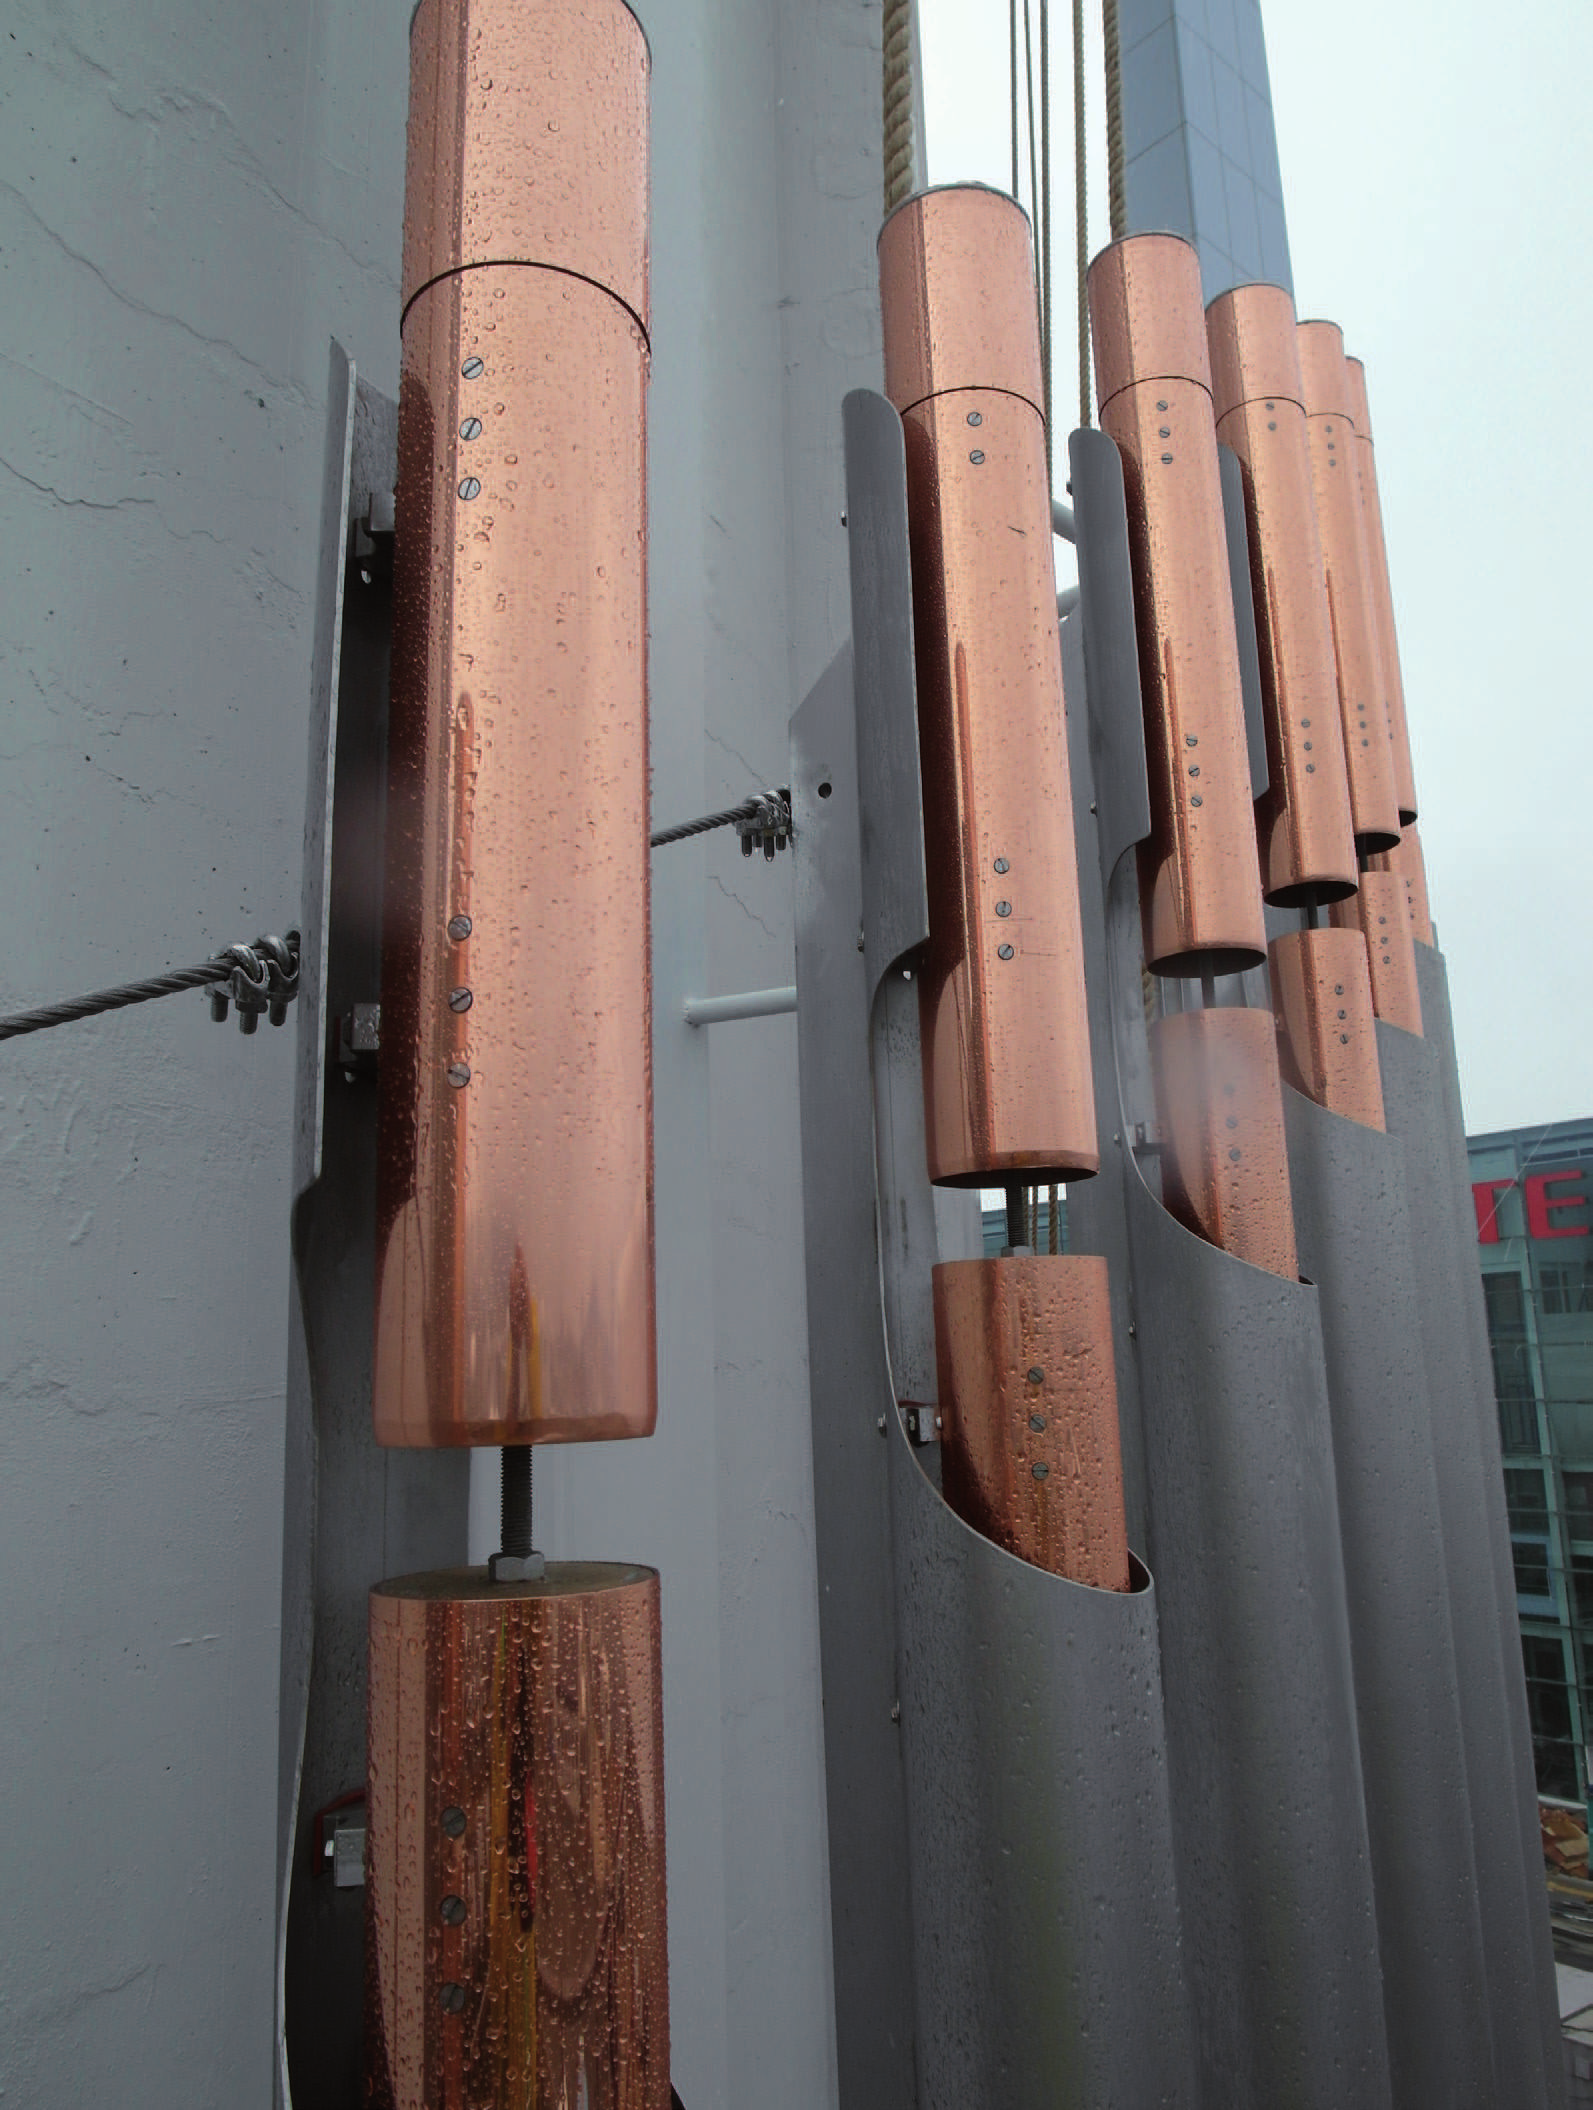 Vox Maris im Regen. Die Pfeifen der Vox Maris wurden exklusiv von der Firma Laukhuff für Hey Orgelbau produziert. Vox Maris in the rain.